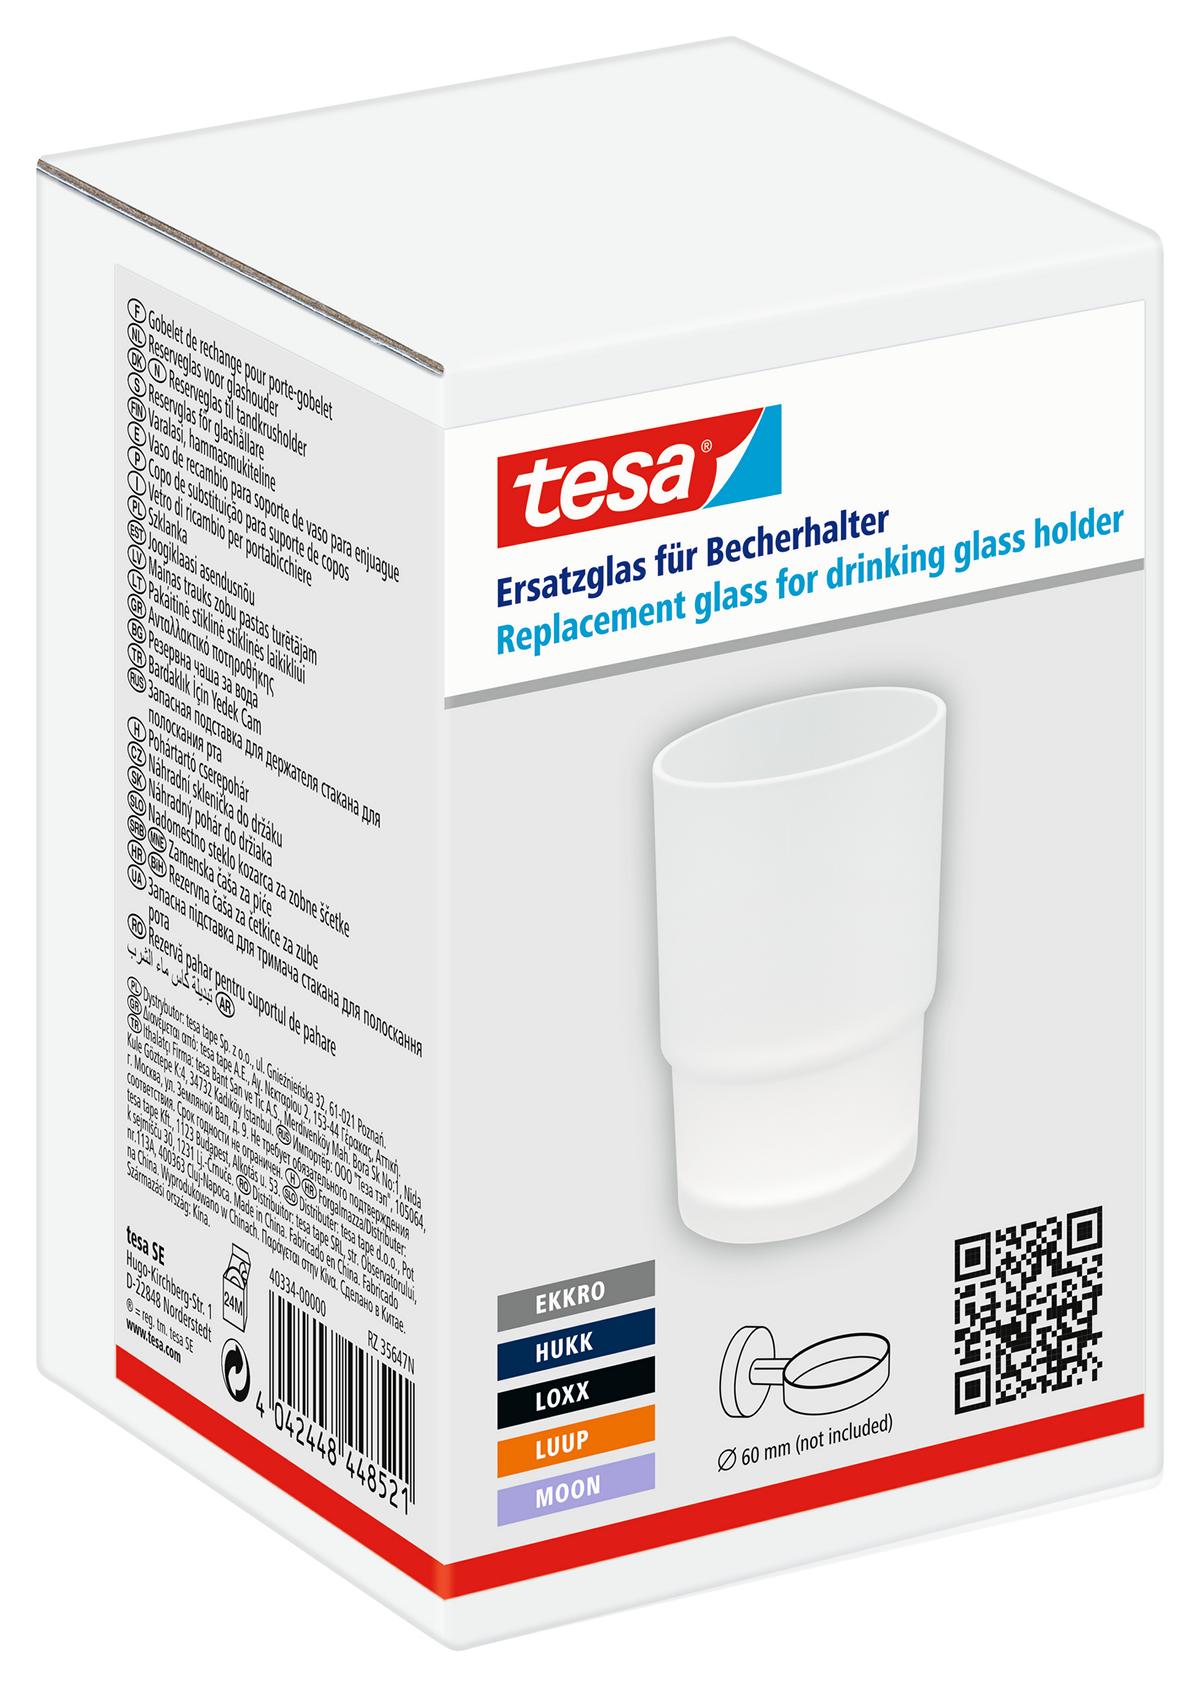 tesa Ersatzglas für Becherhalter, Ø 60